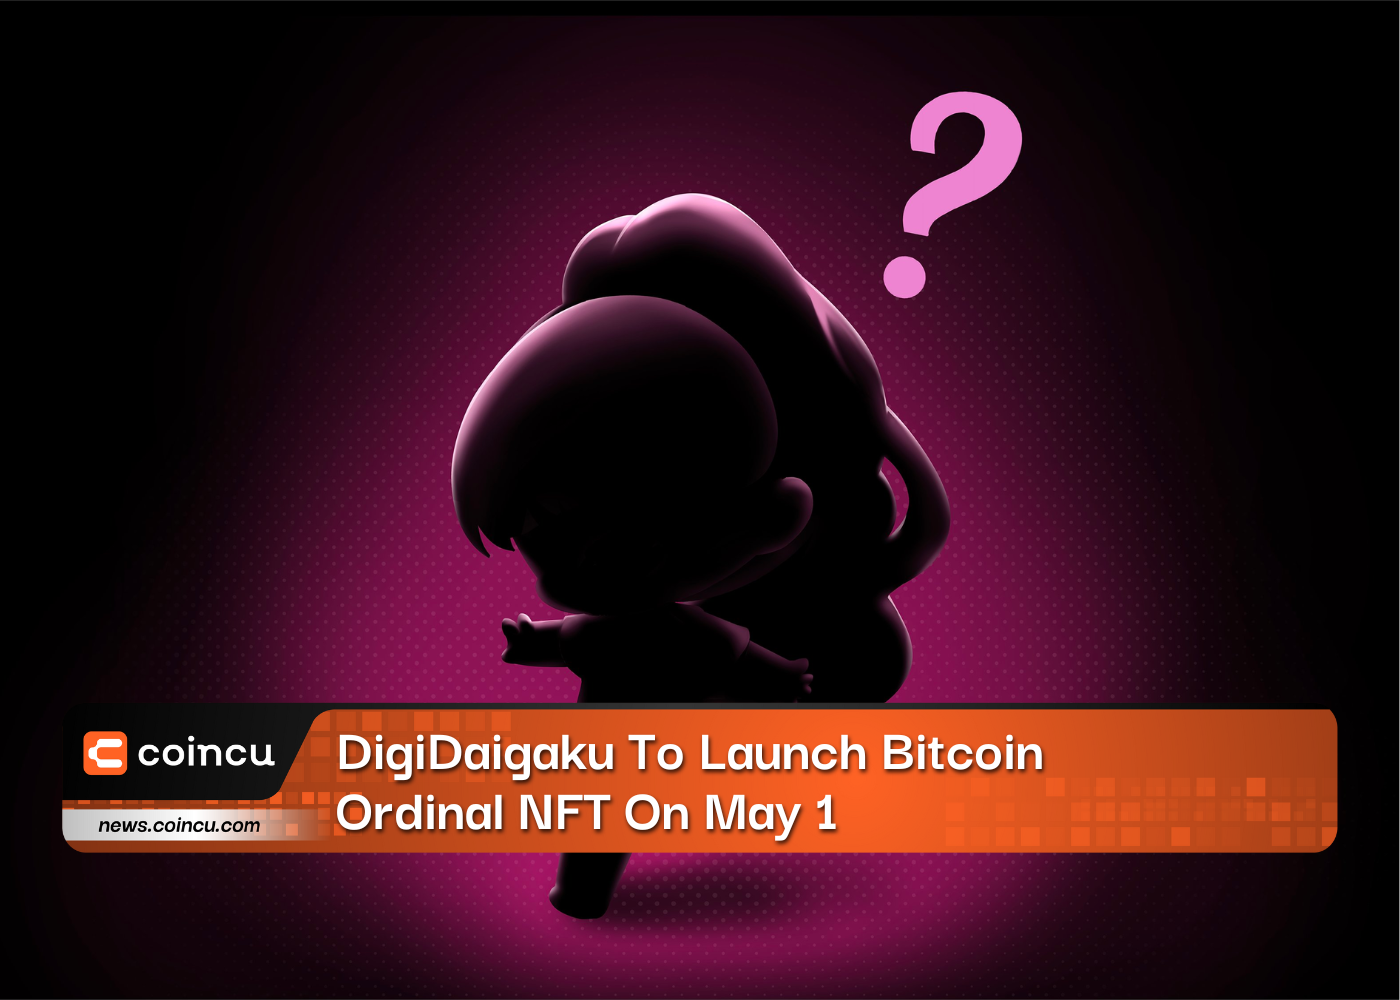 DigiDaigaku To Launch Bitcoin Ordinal NFT On May 1